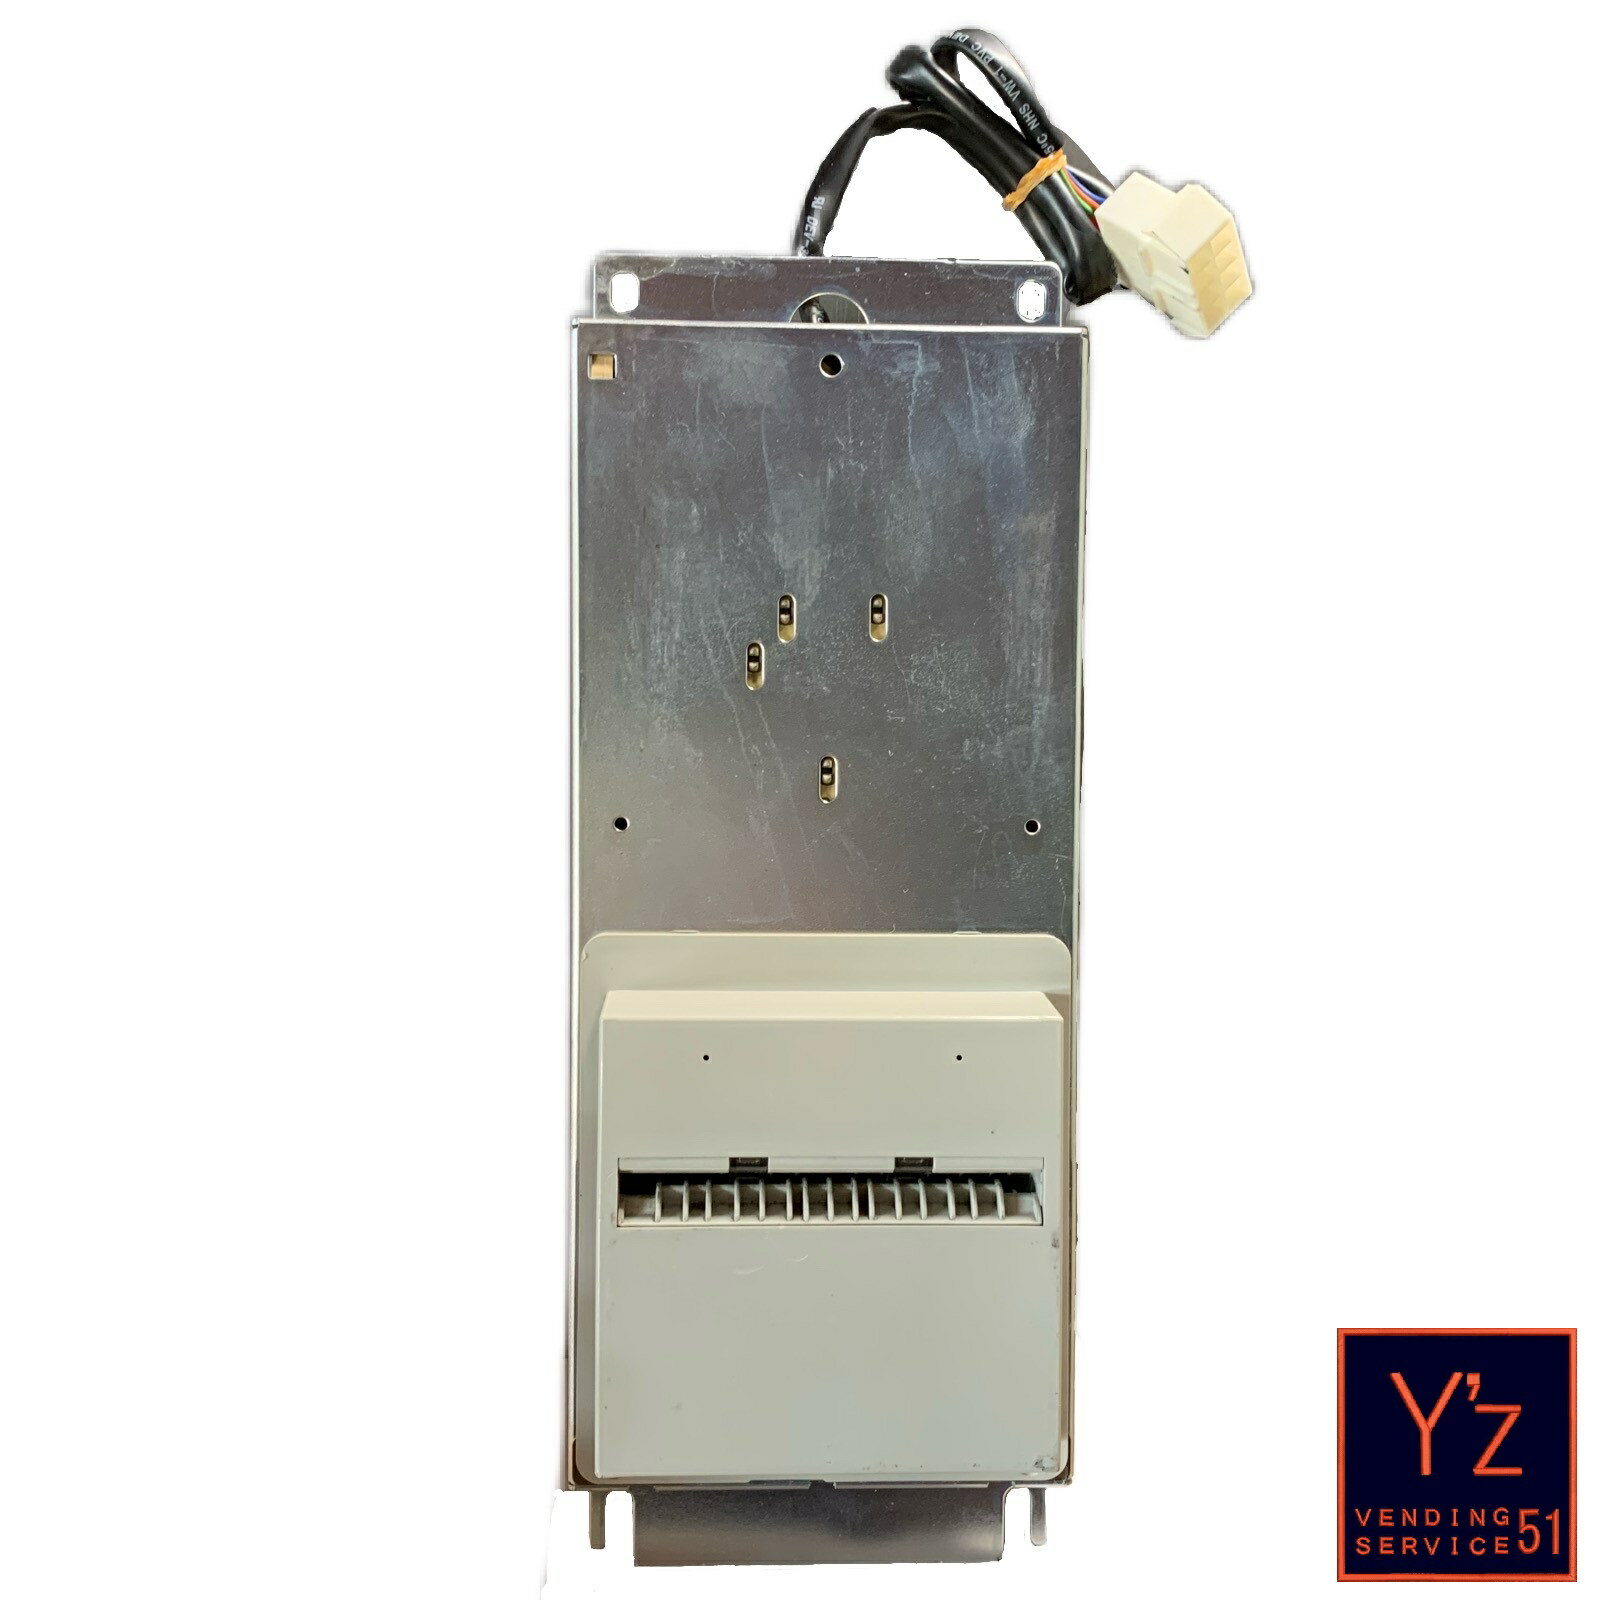 ビルバリ 中古品 富士電機 たばこ自動販売機 その他自動販売機対応 紙幣識別機 他種機との互換性 FG 上向き ビルバリデータ